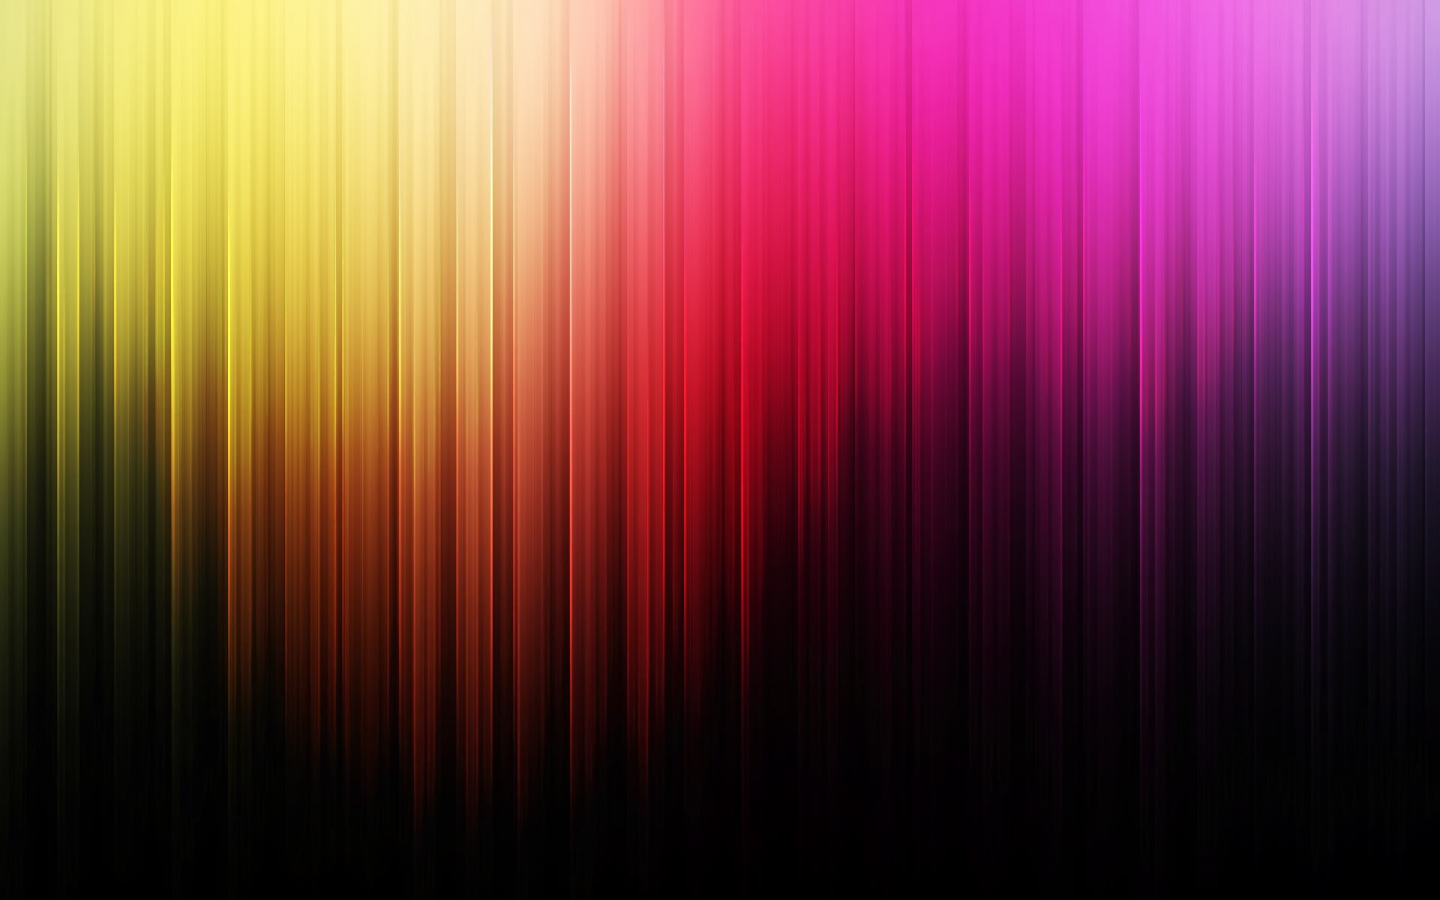 Aurora Borealis for 1440 x 900 widescreen resolution